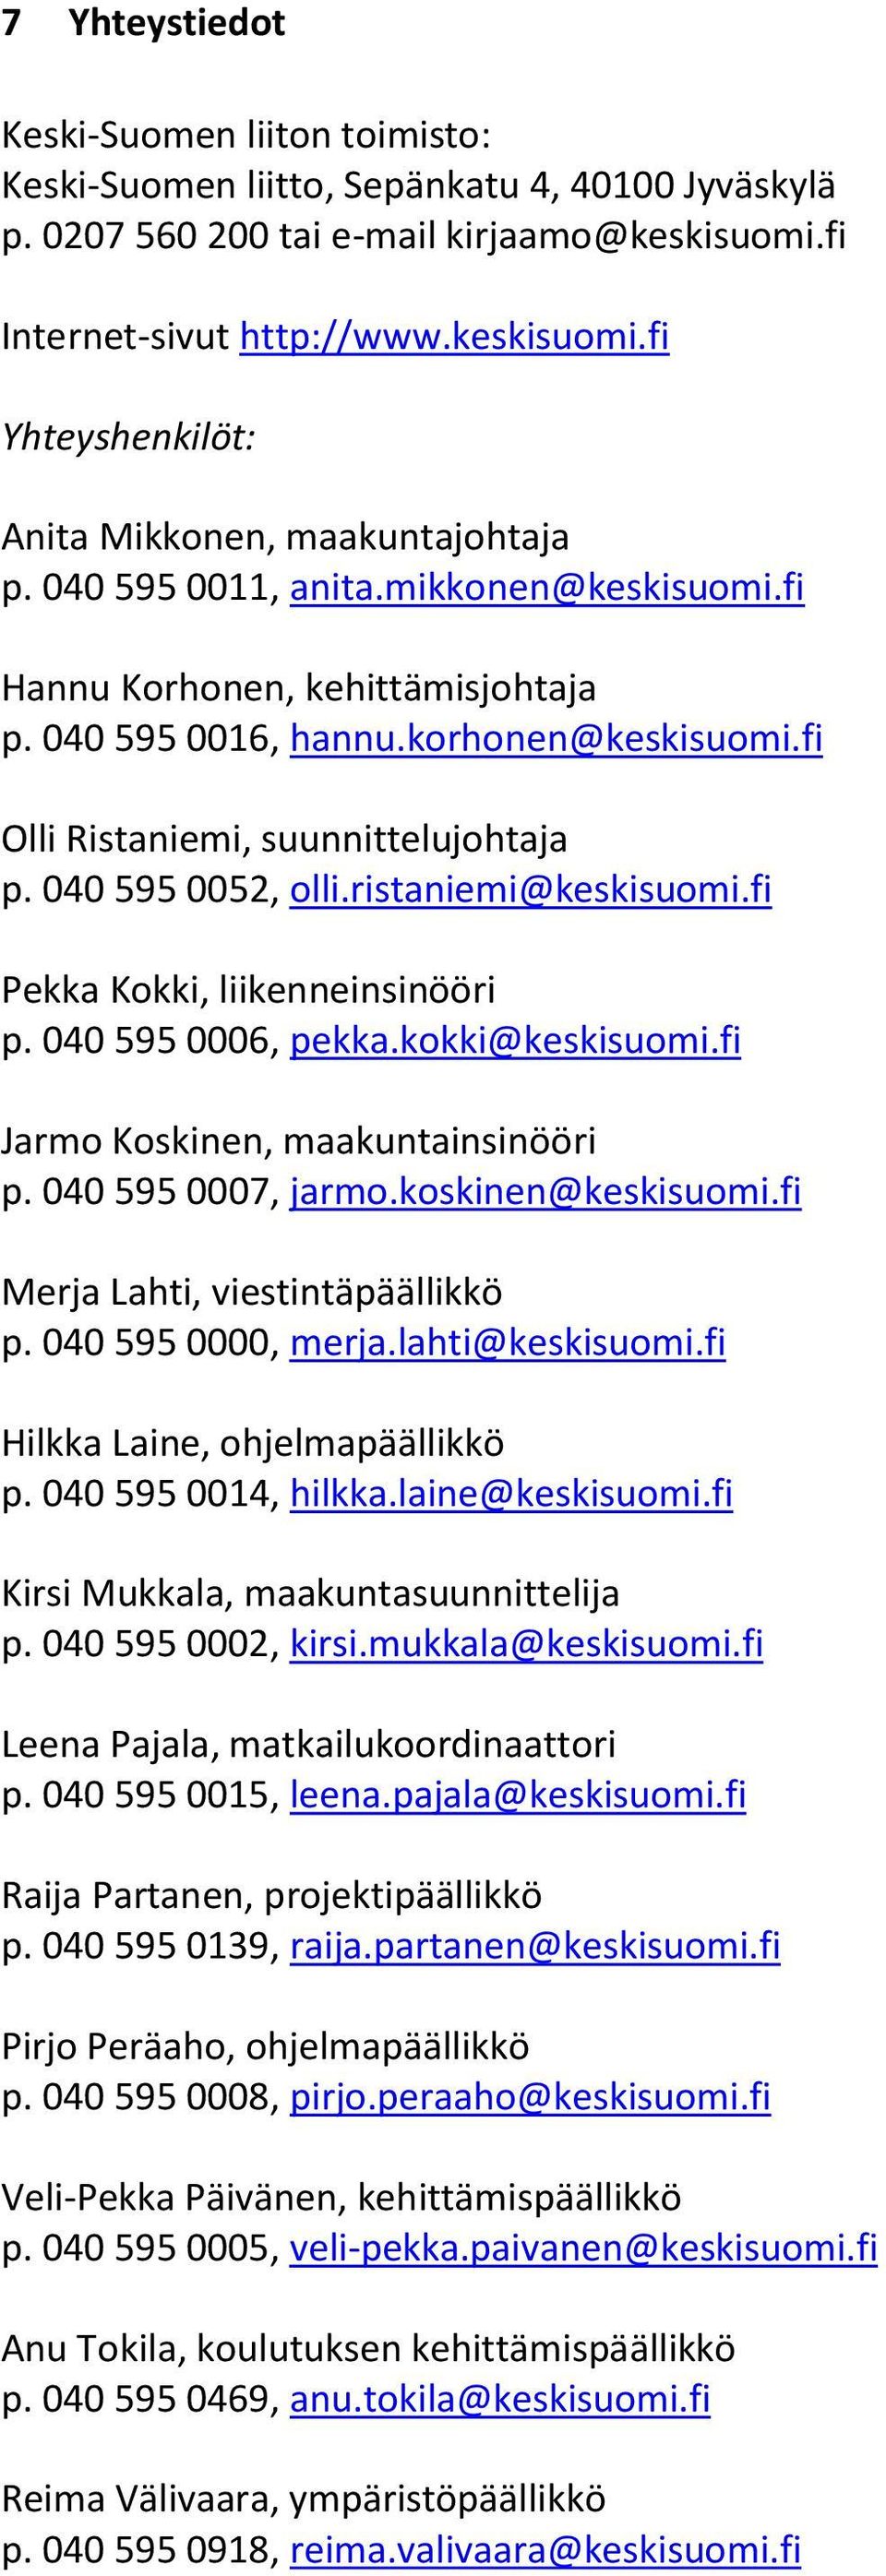 ristaniemi@keskisuomi.fi Pekka Kokki, liikenneinsinööri p. 040 595 0006, pekka.kokki@keskisuomi.fi Jarmo Koskinen, maakuntainsinööri p. 040 595 0007, jarmo.koskinen@keskisuomi.